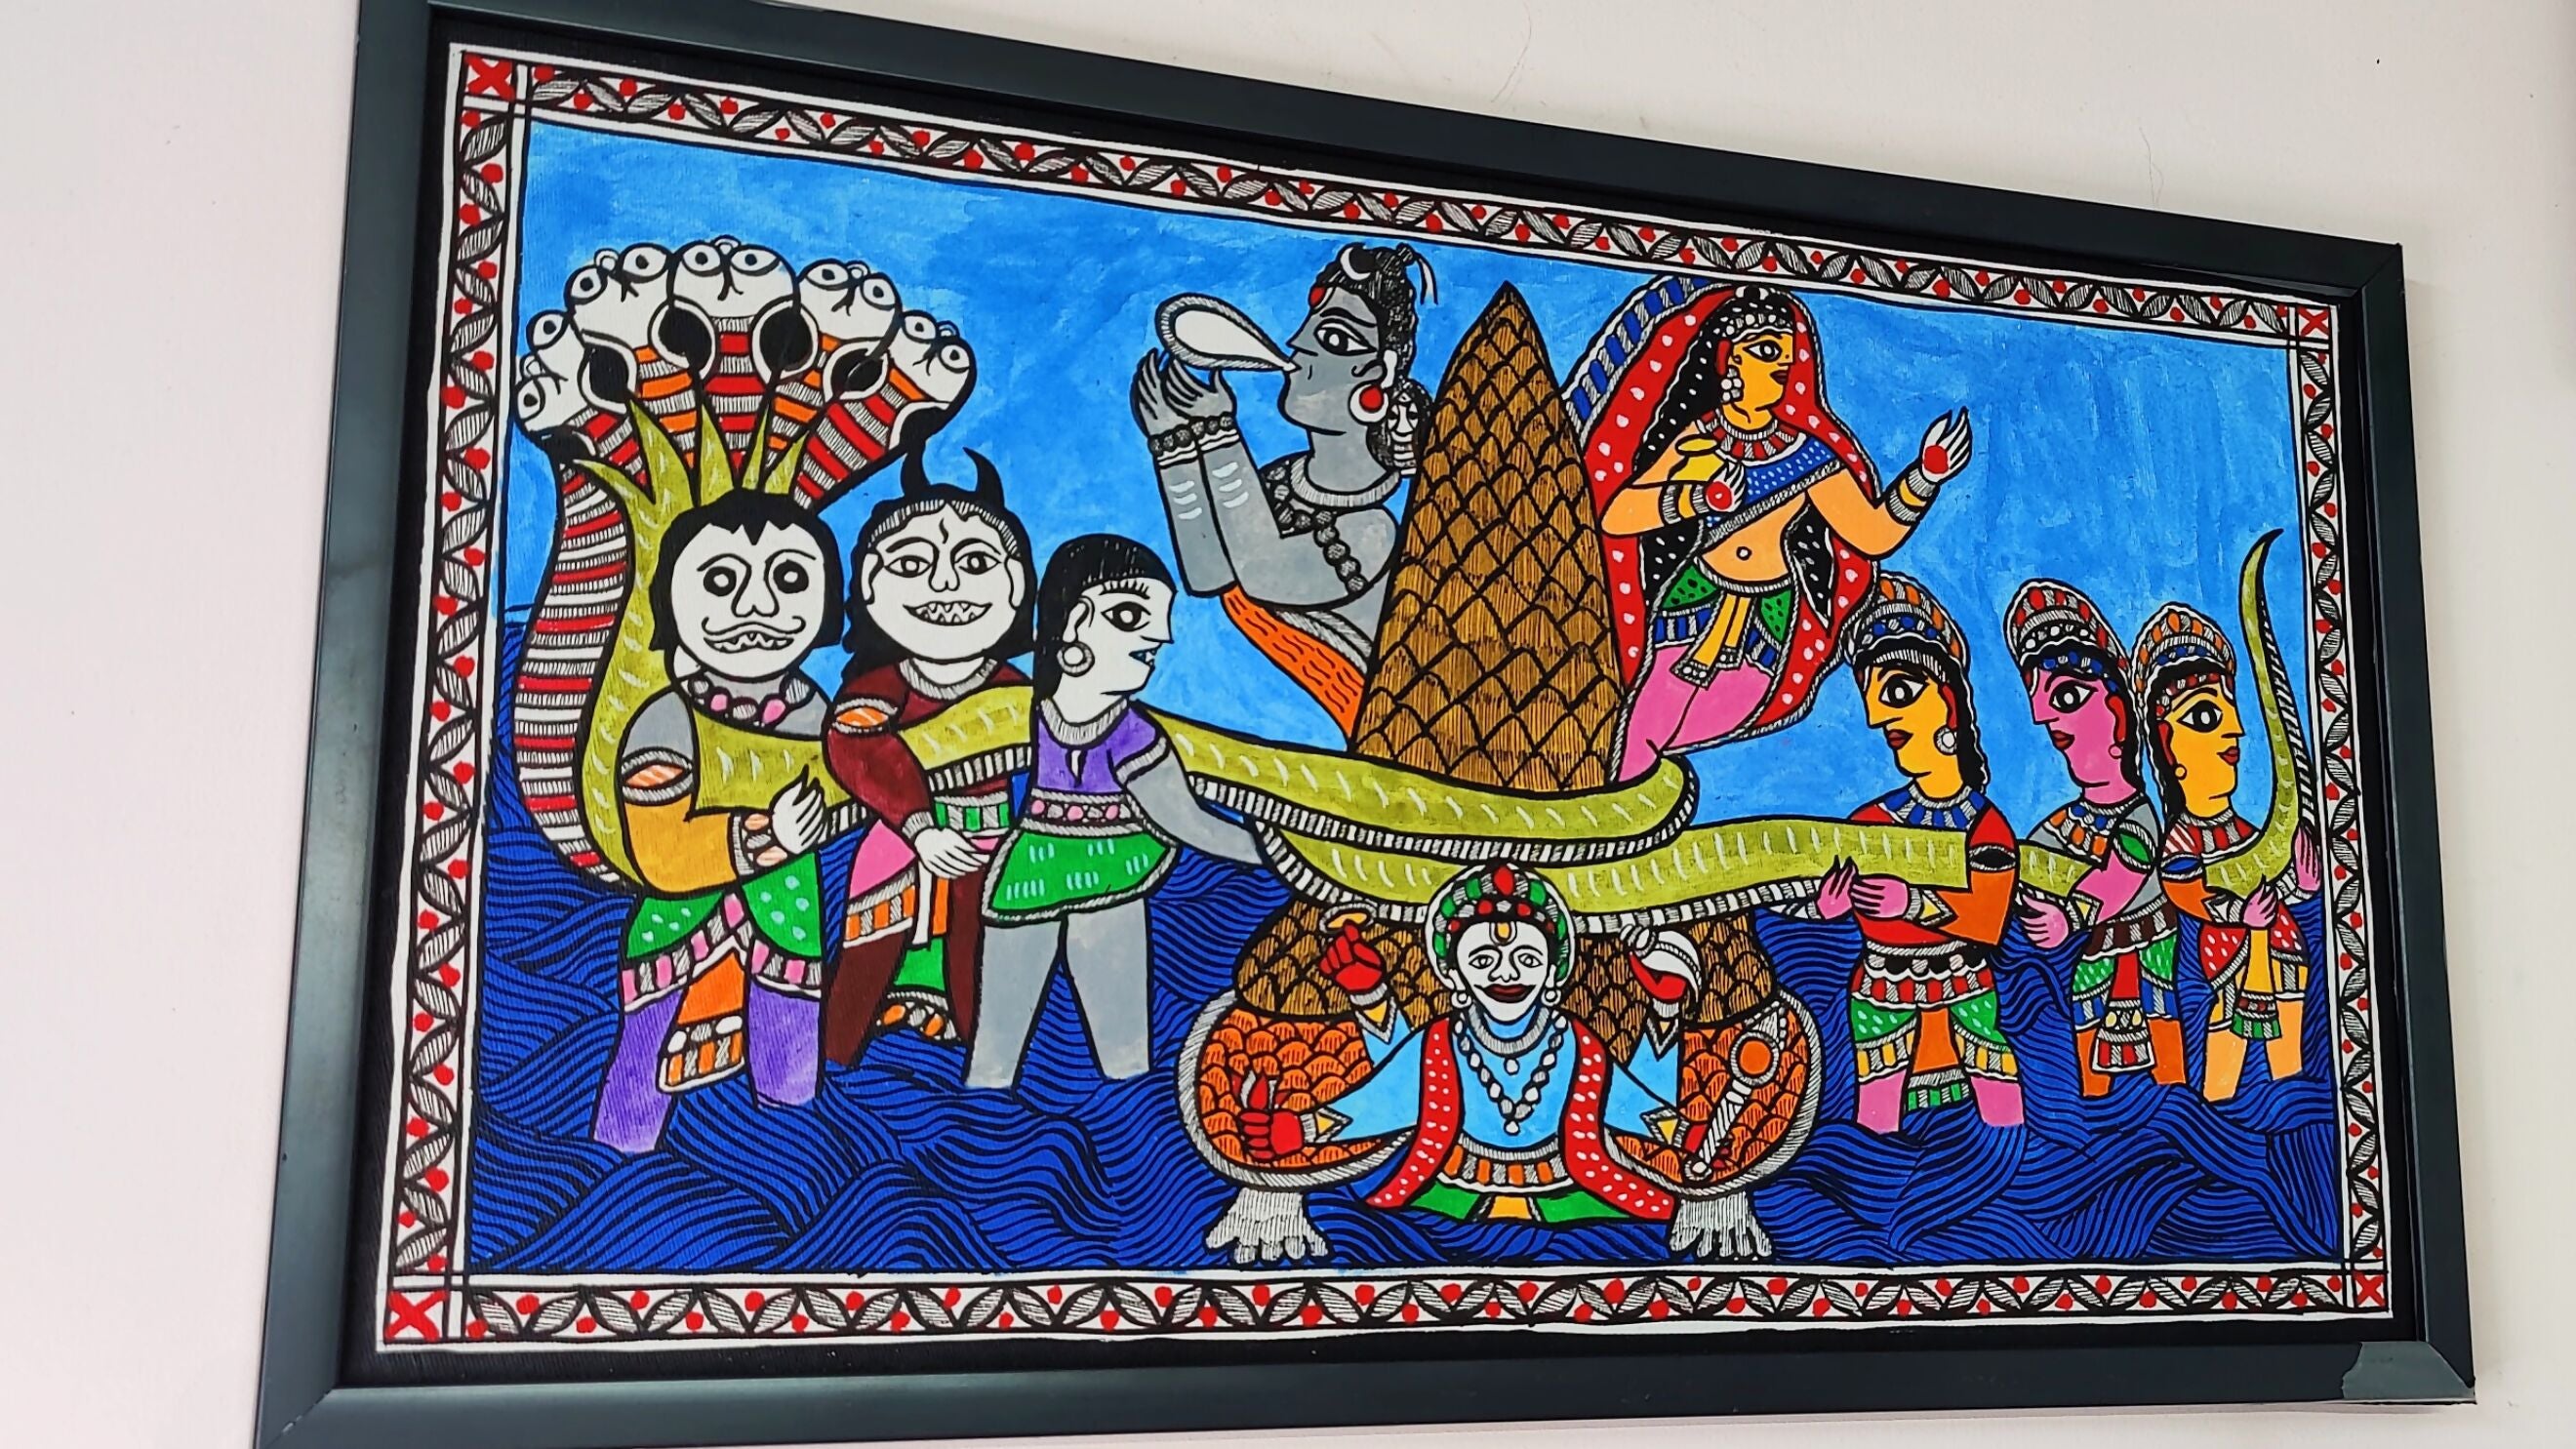 Oceanic Harmony: Madhubani Masterpiece of "Samudra Manthan"